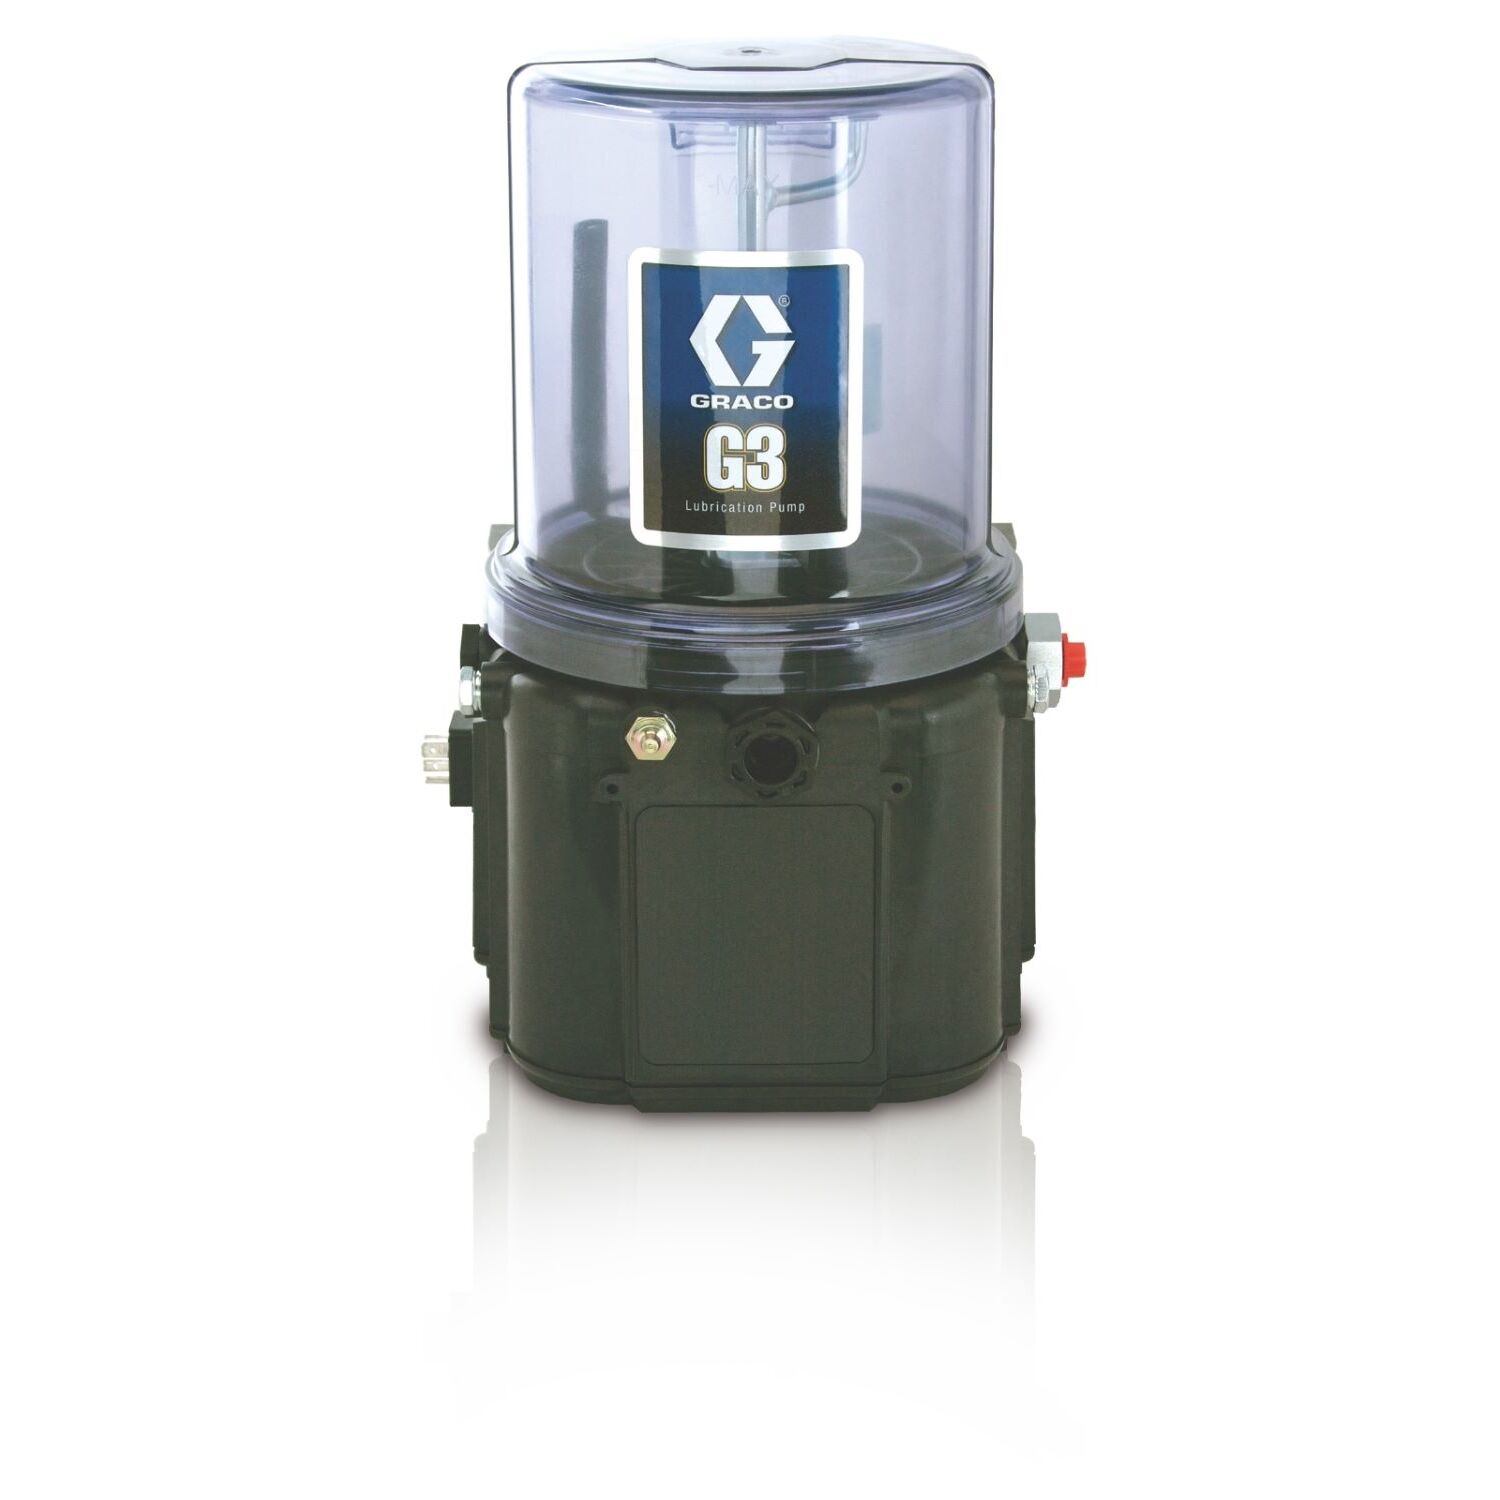 1 Bomba de lubricación con grasa estándar G3™, 24V DC, 2 litros, nivel bajo externo, CPC